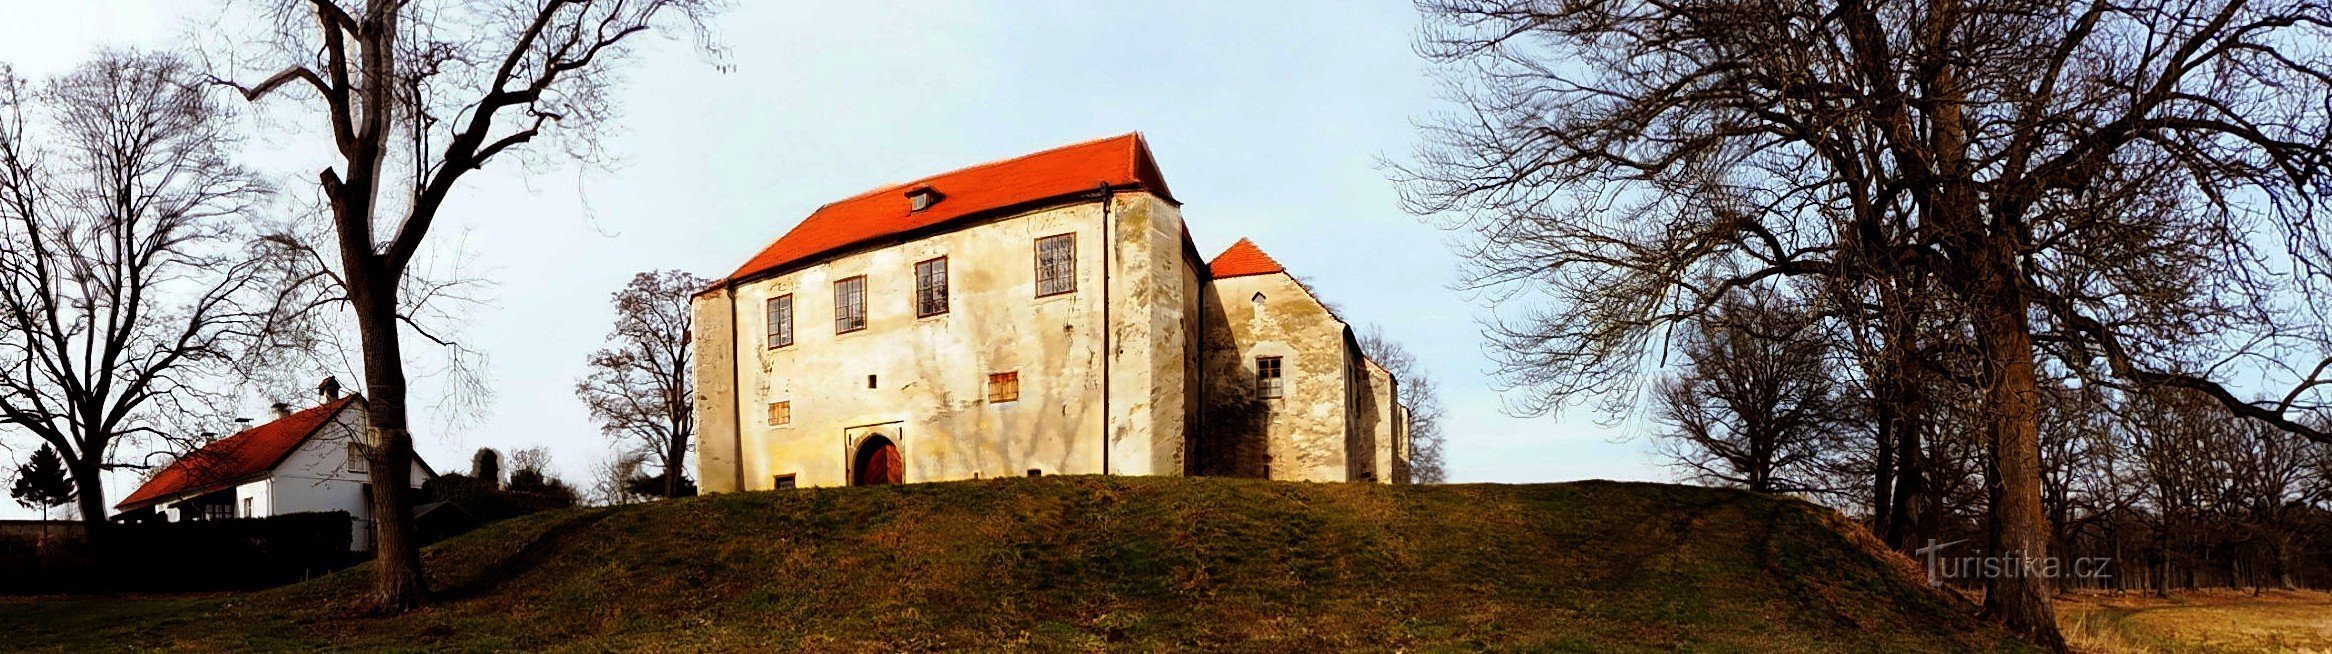 ゴシック様式の要塞ズクンシュテイン